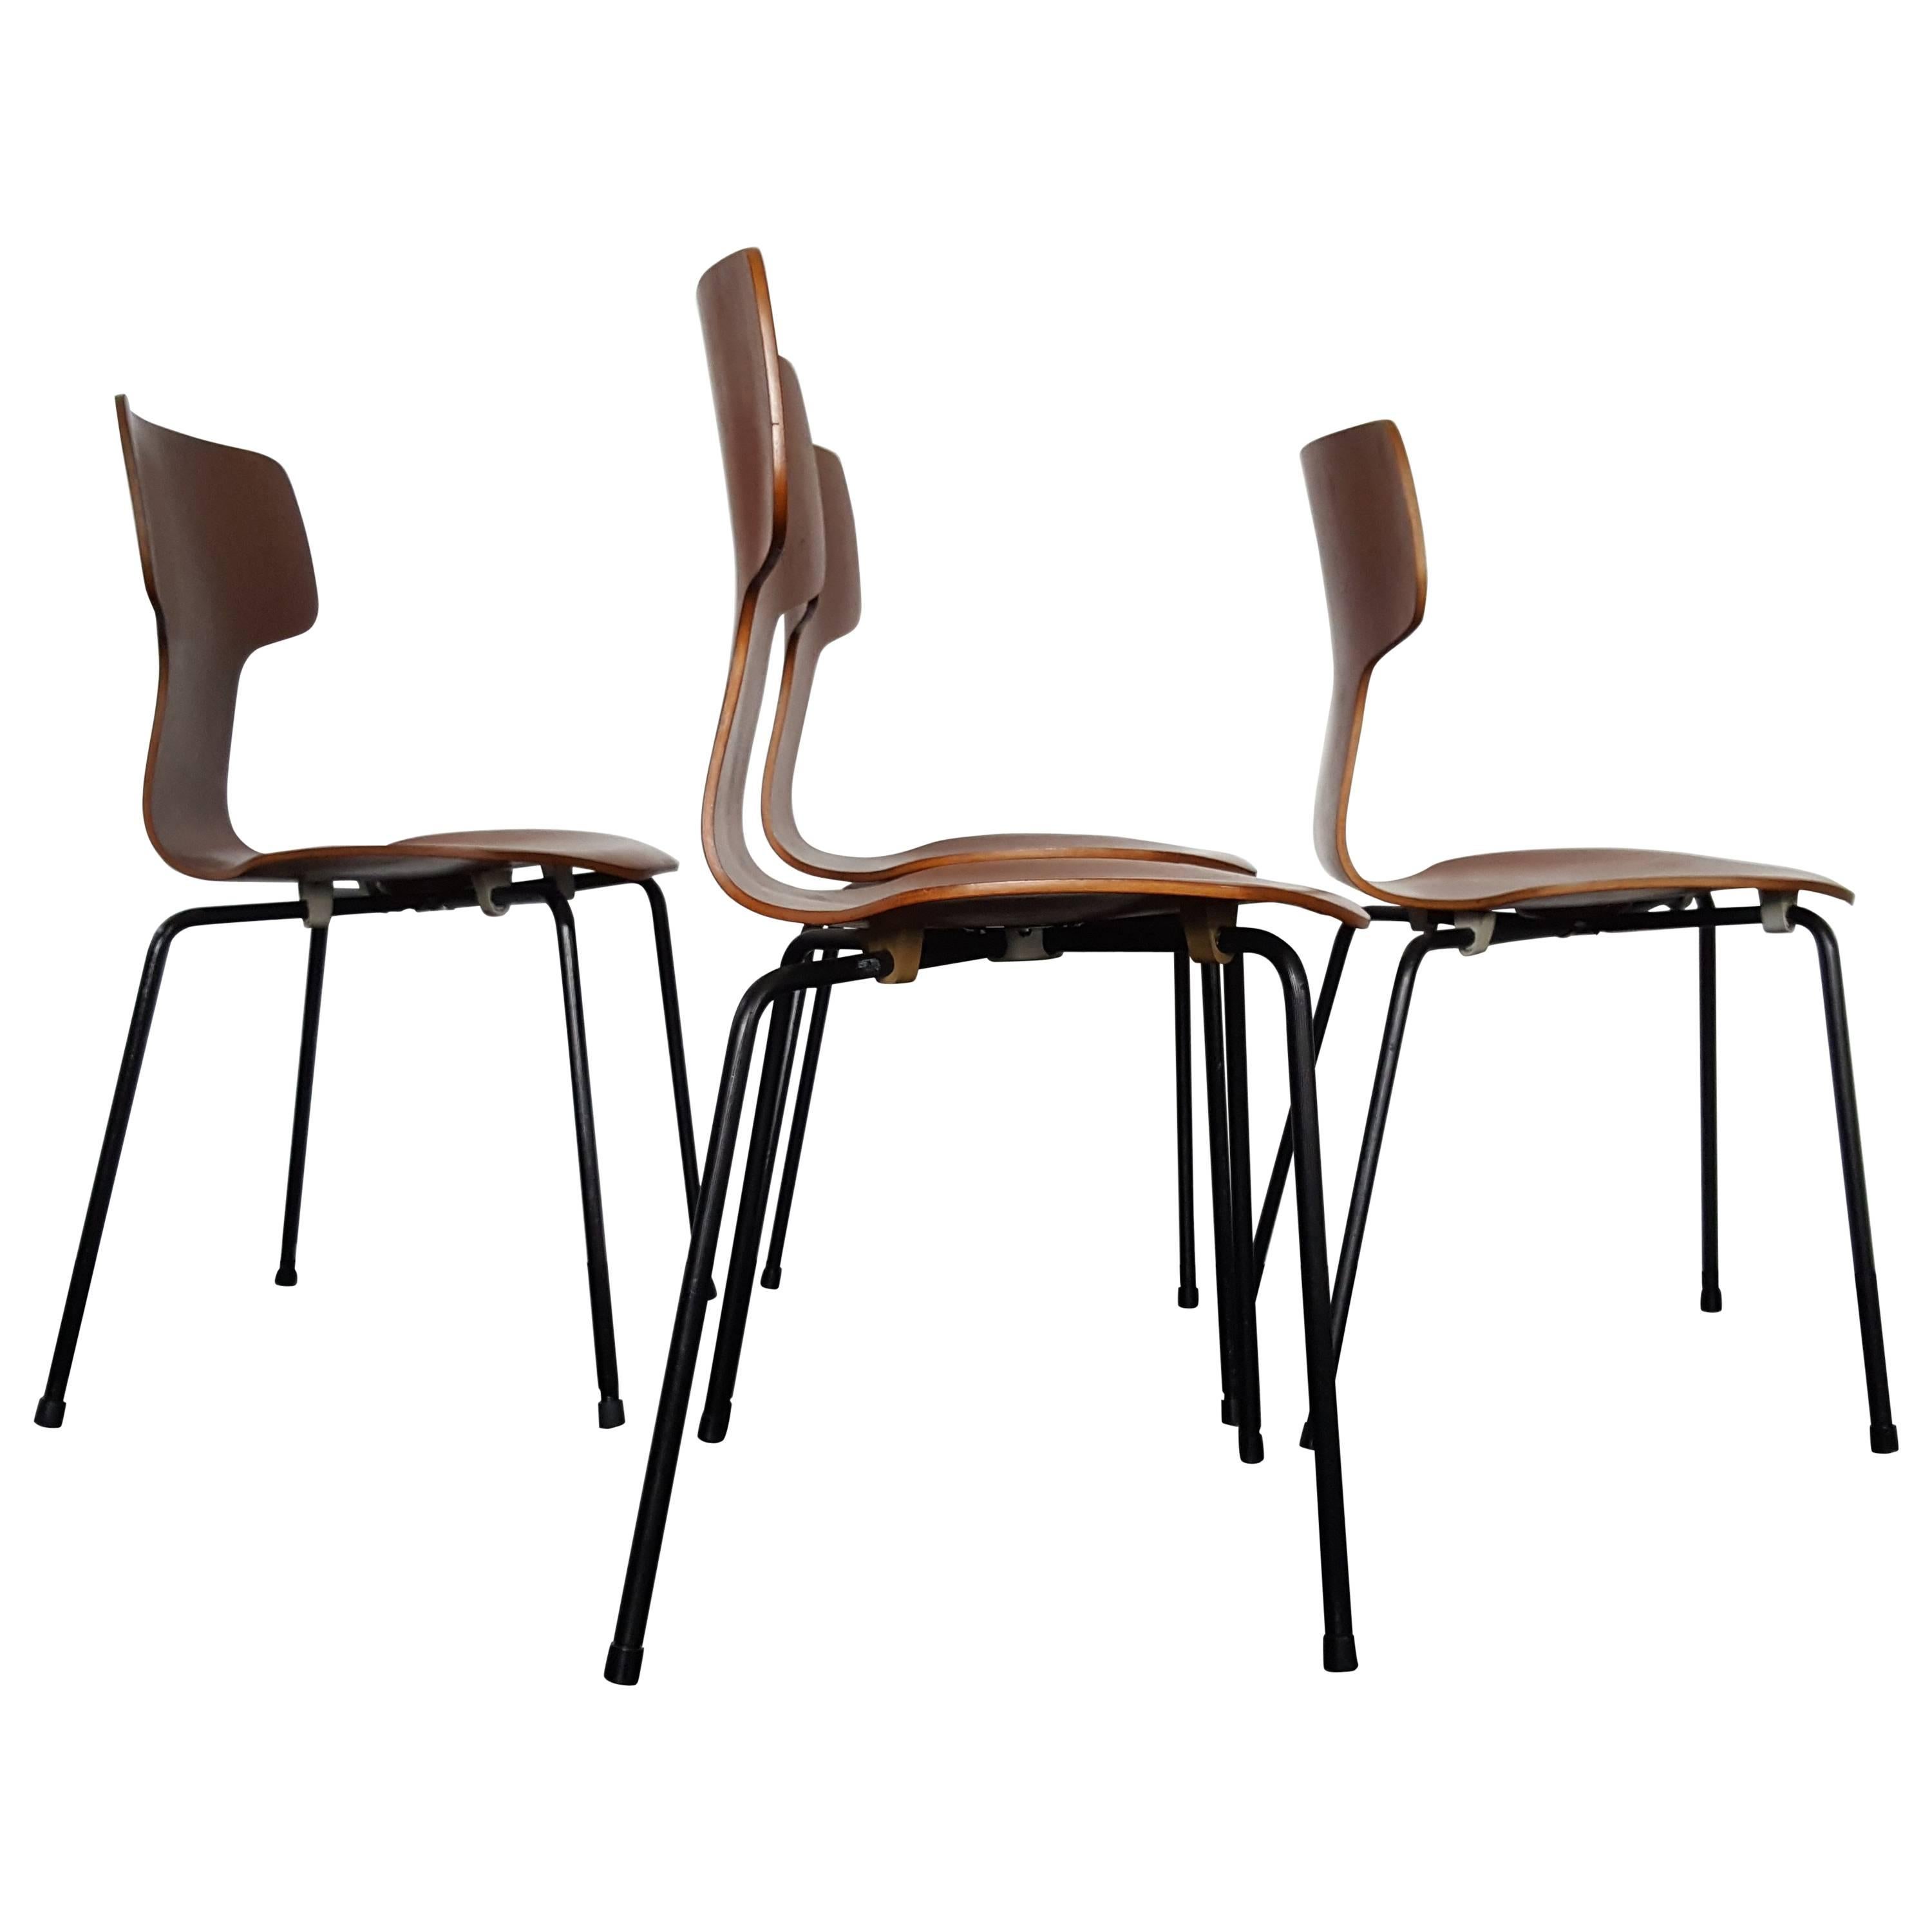 Model 3103 Hammer Chairs by Arne Jacobsen for Fritz Hansen, 1960s